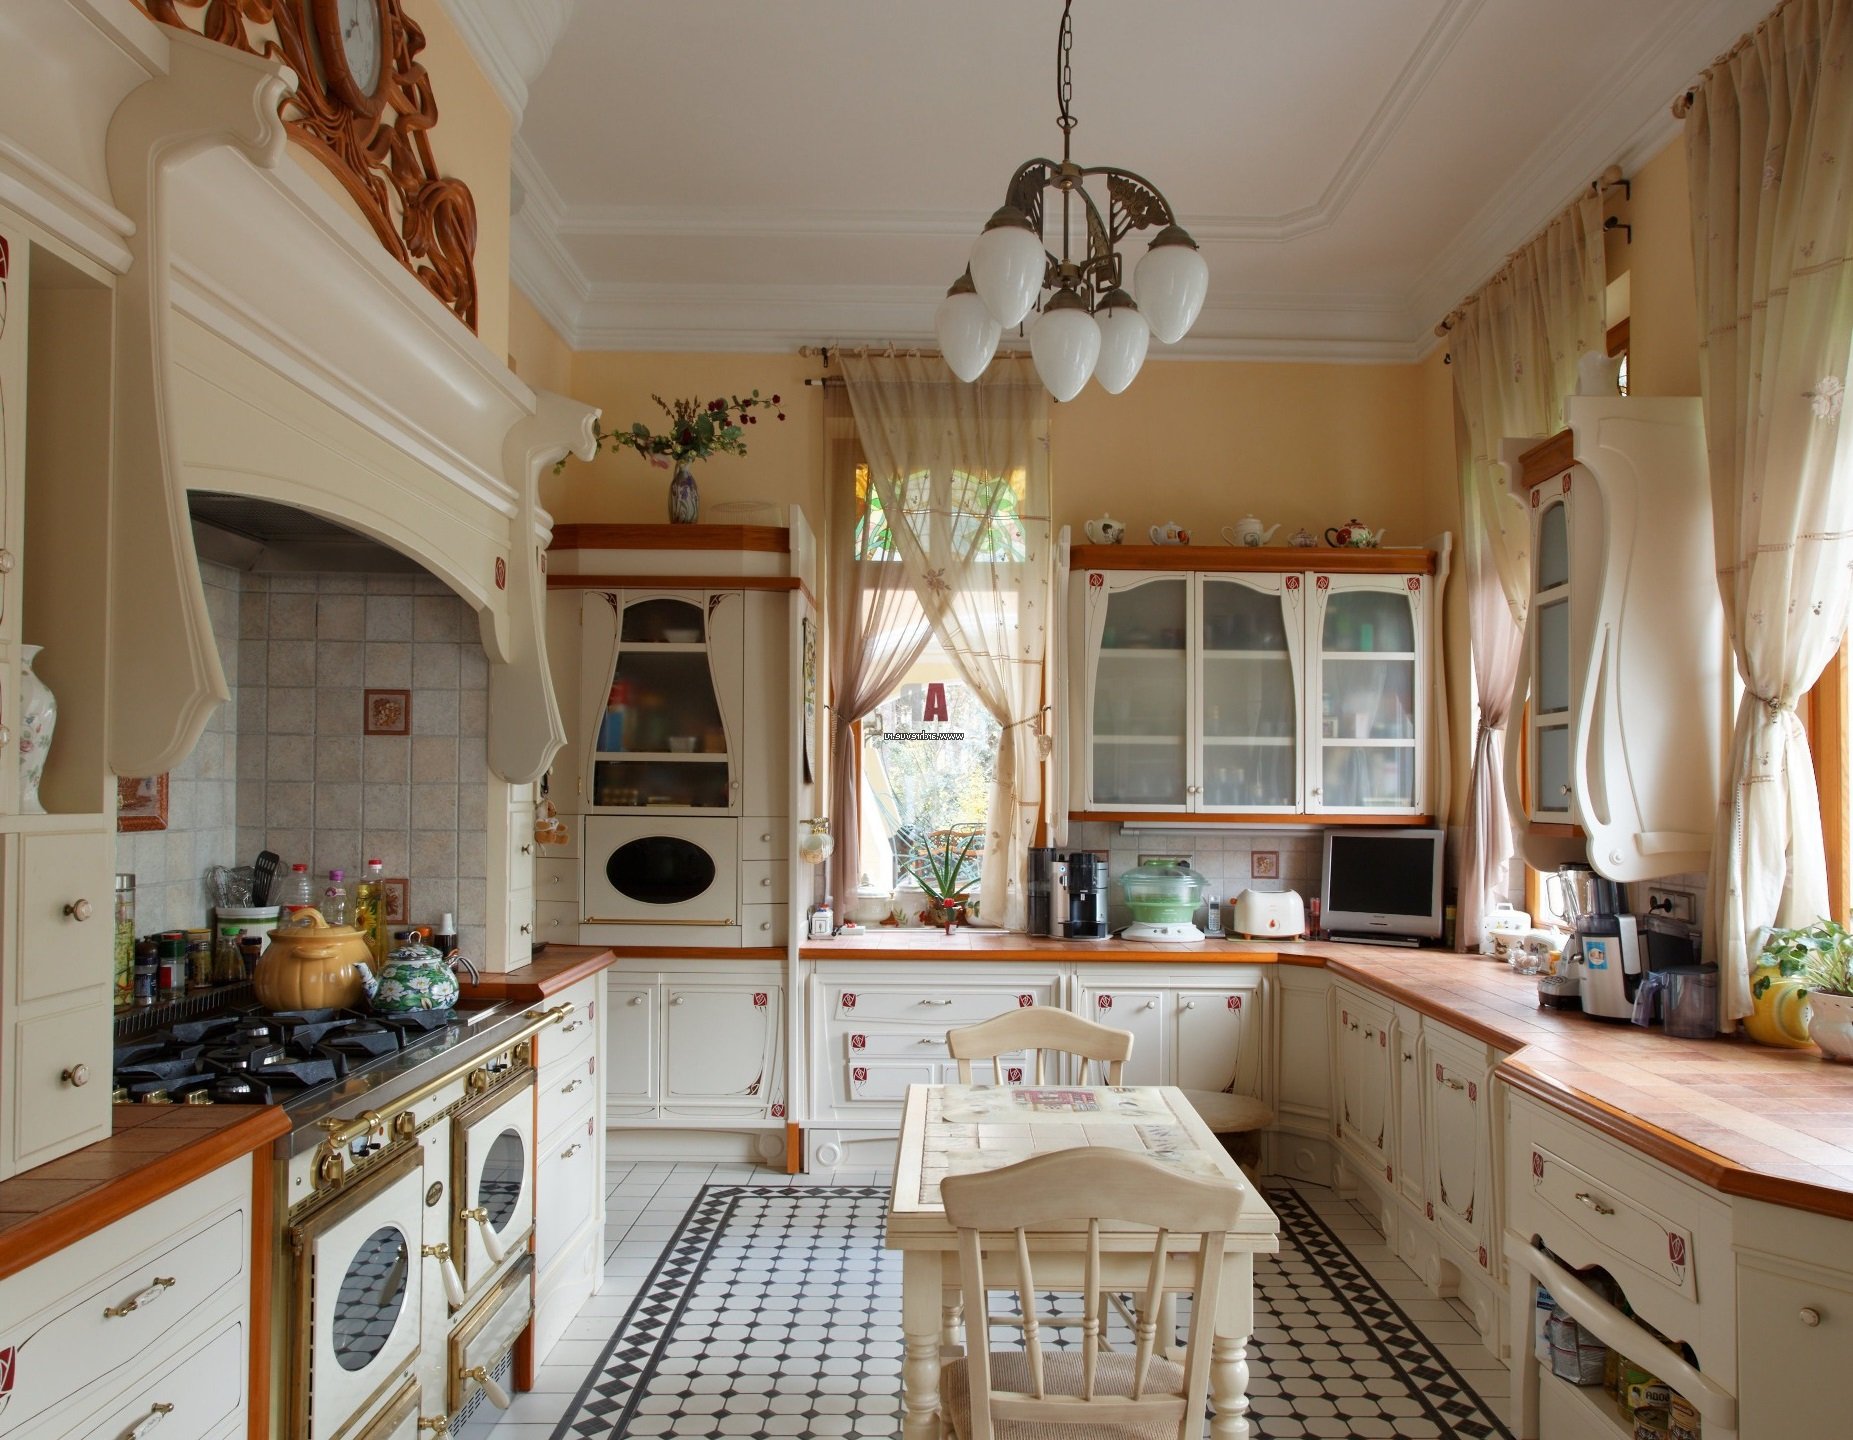 Г-образная кухня — примеры выбора стилей, варианты дизайна и планировки угловой кухни (100 фото)